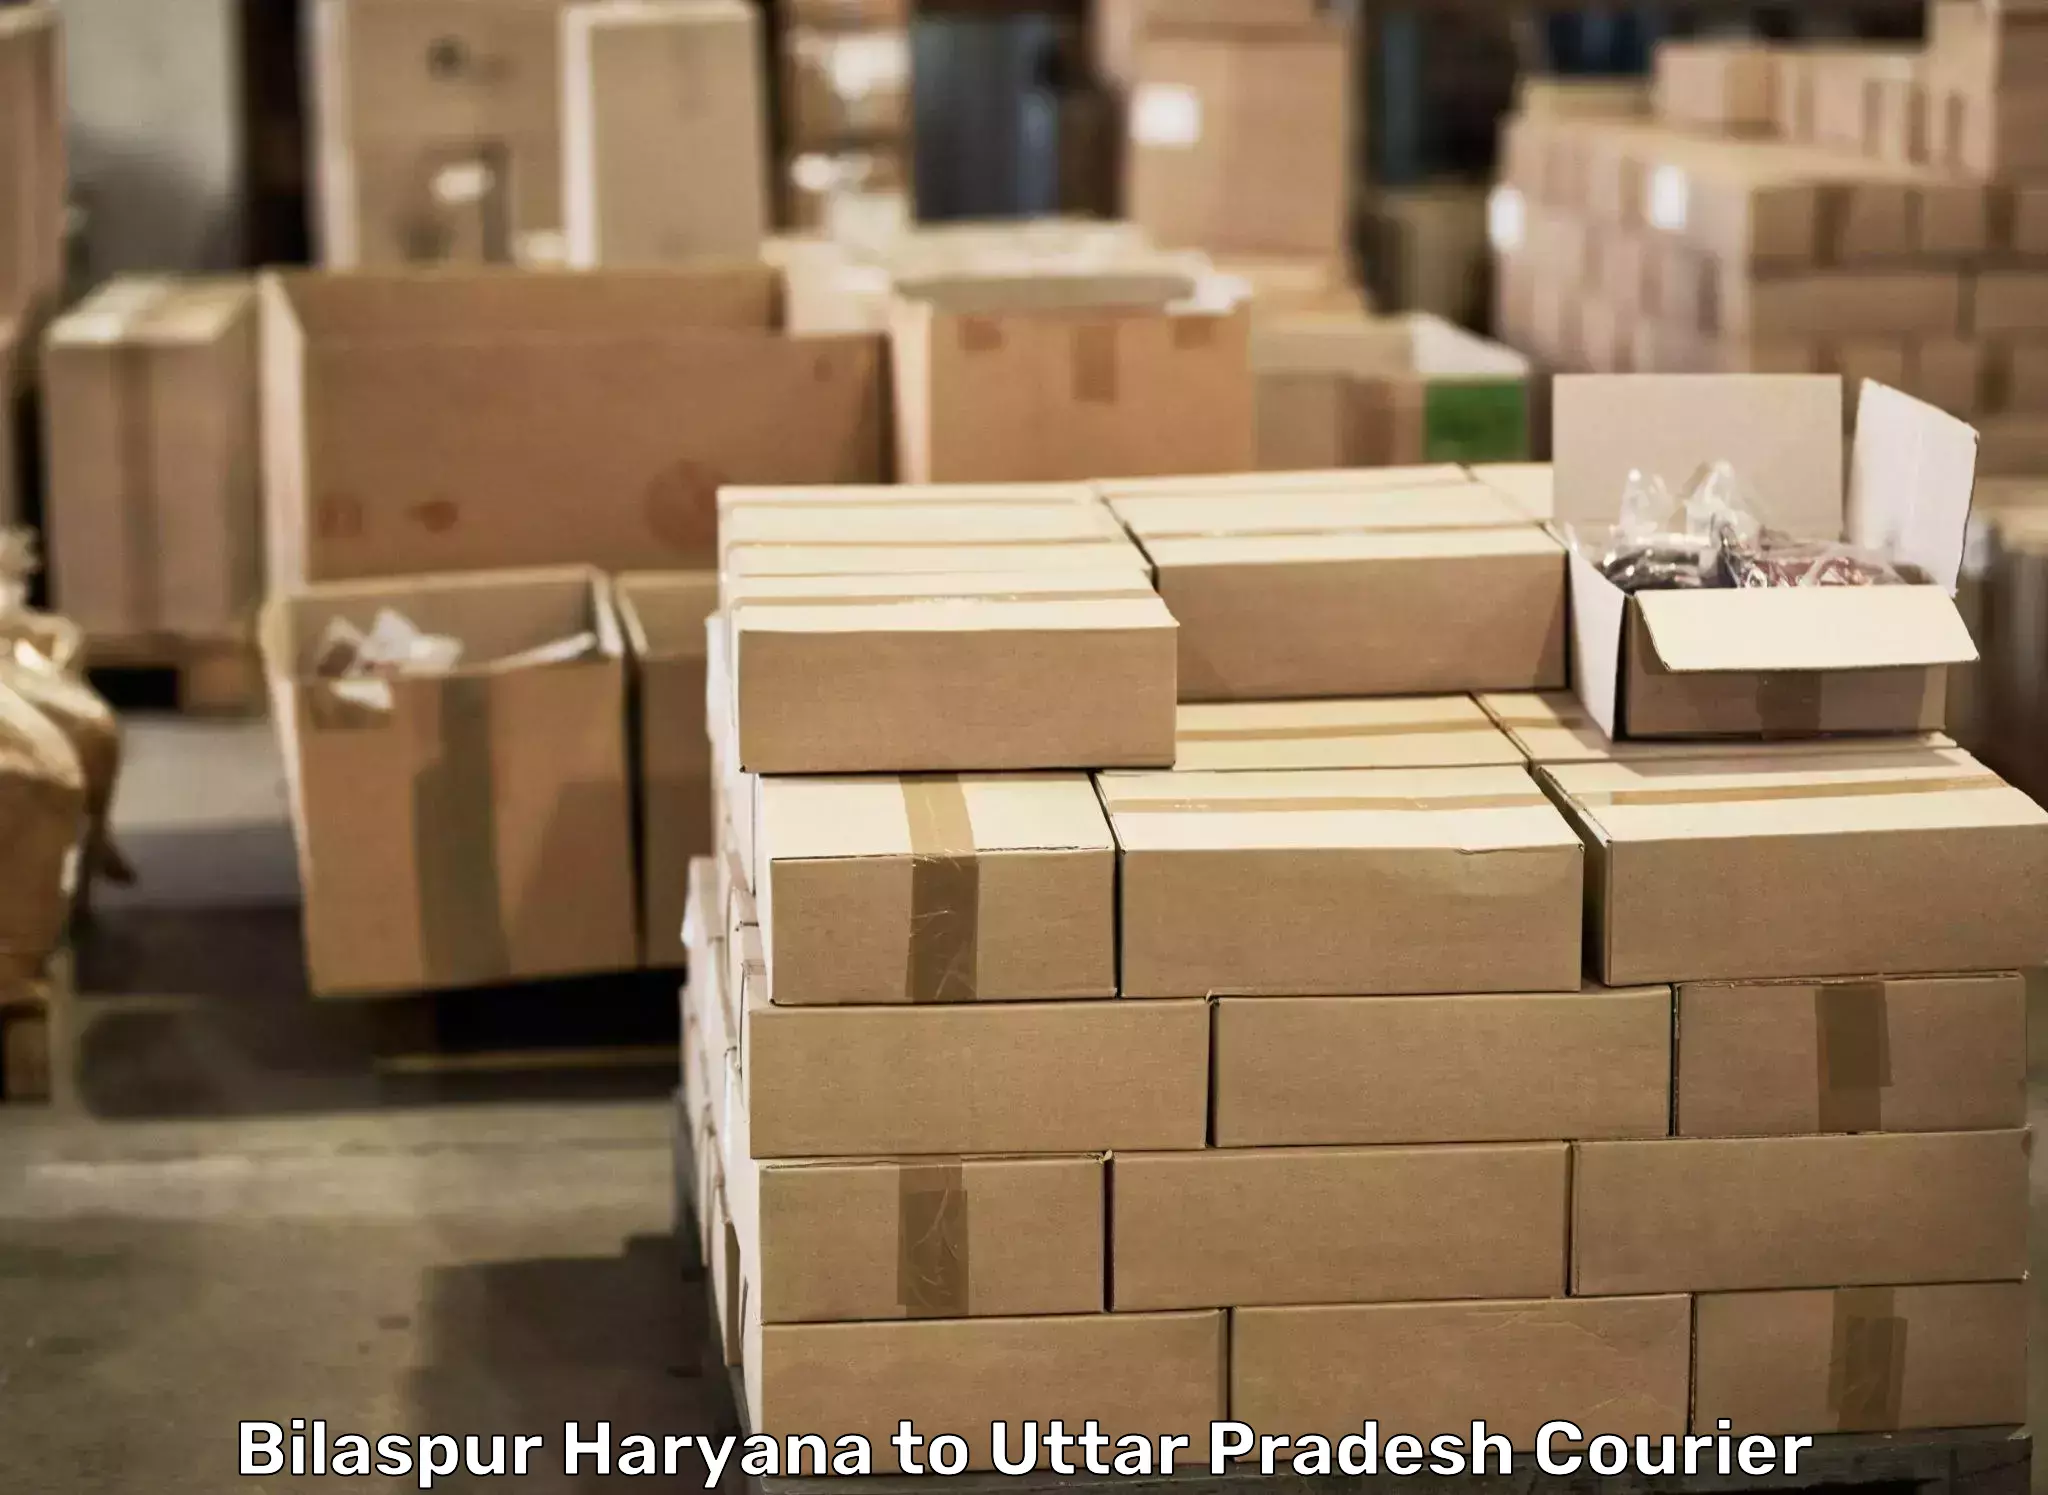 Furniture moving experts Bilaspur Haryana to Kanth